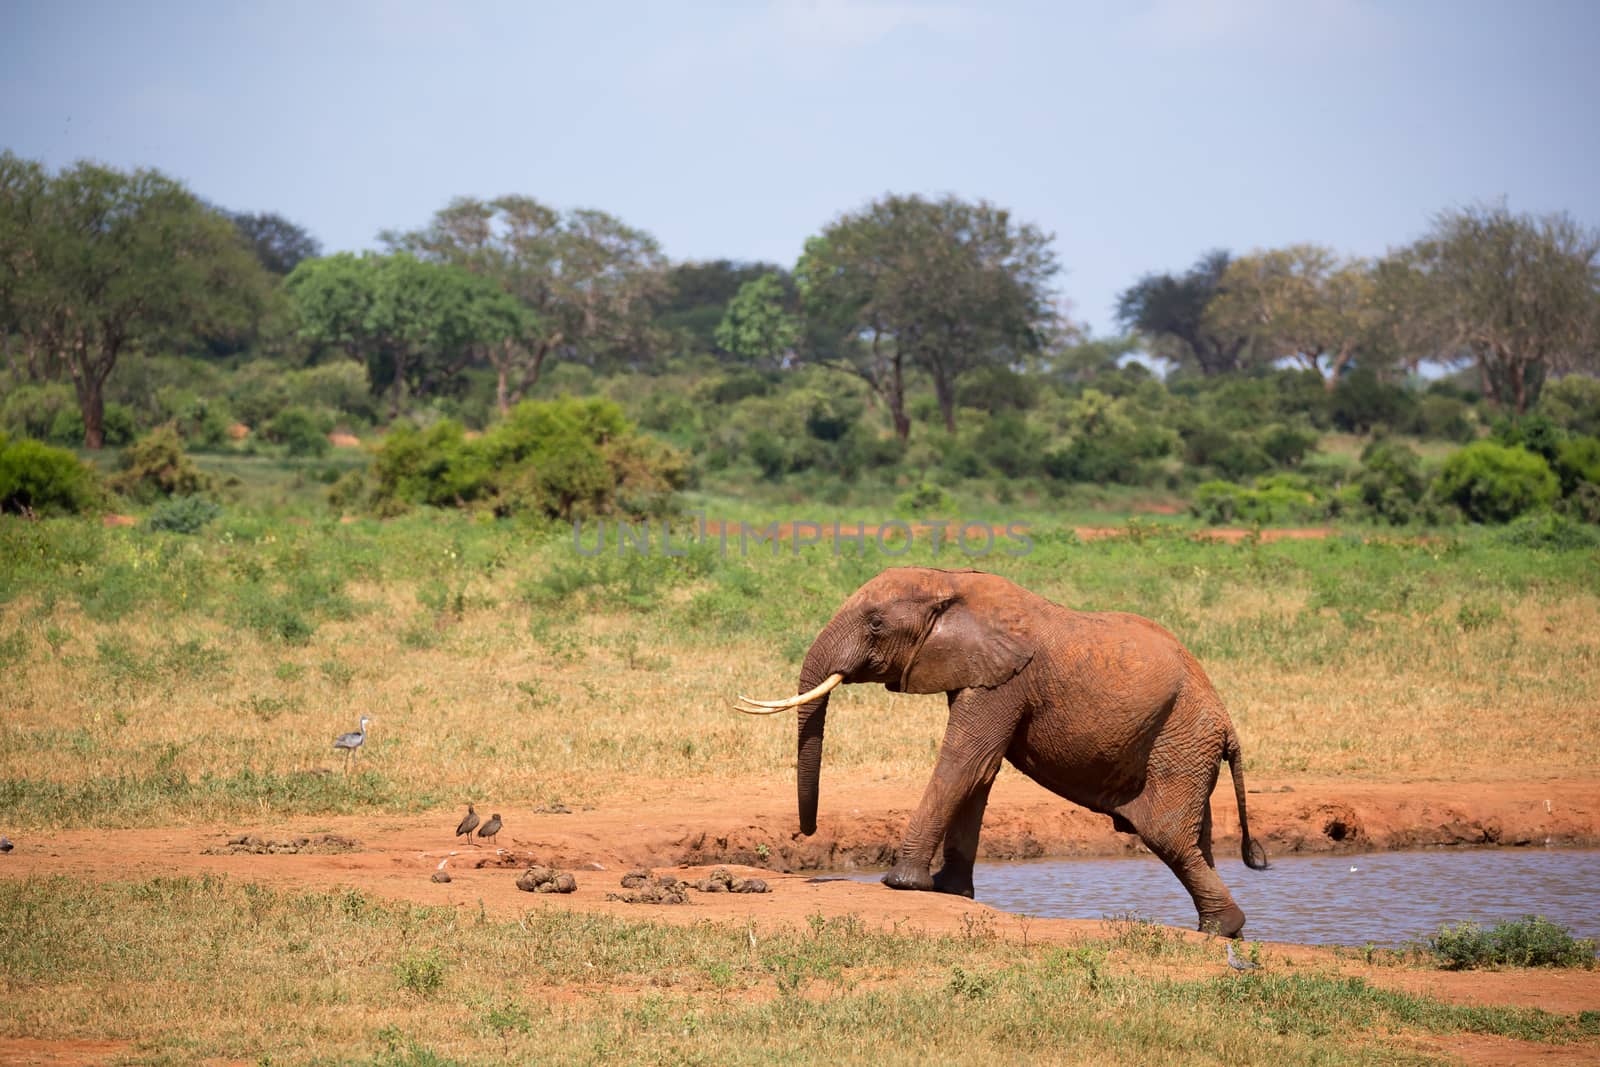 Elephant on the waterhole in the savannah of Kenya